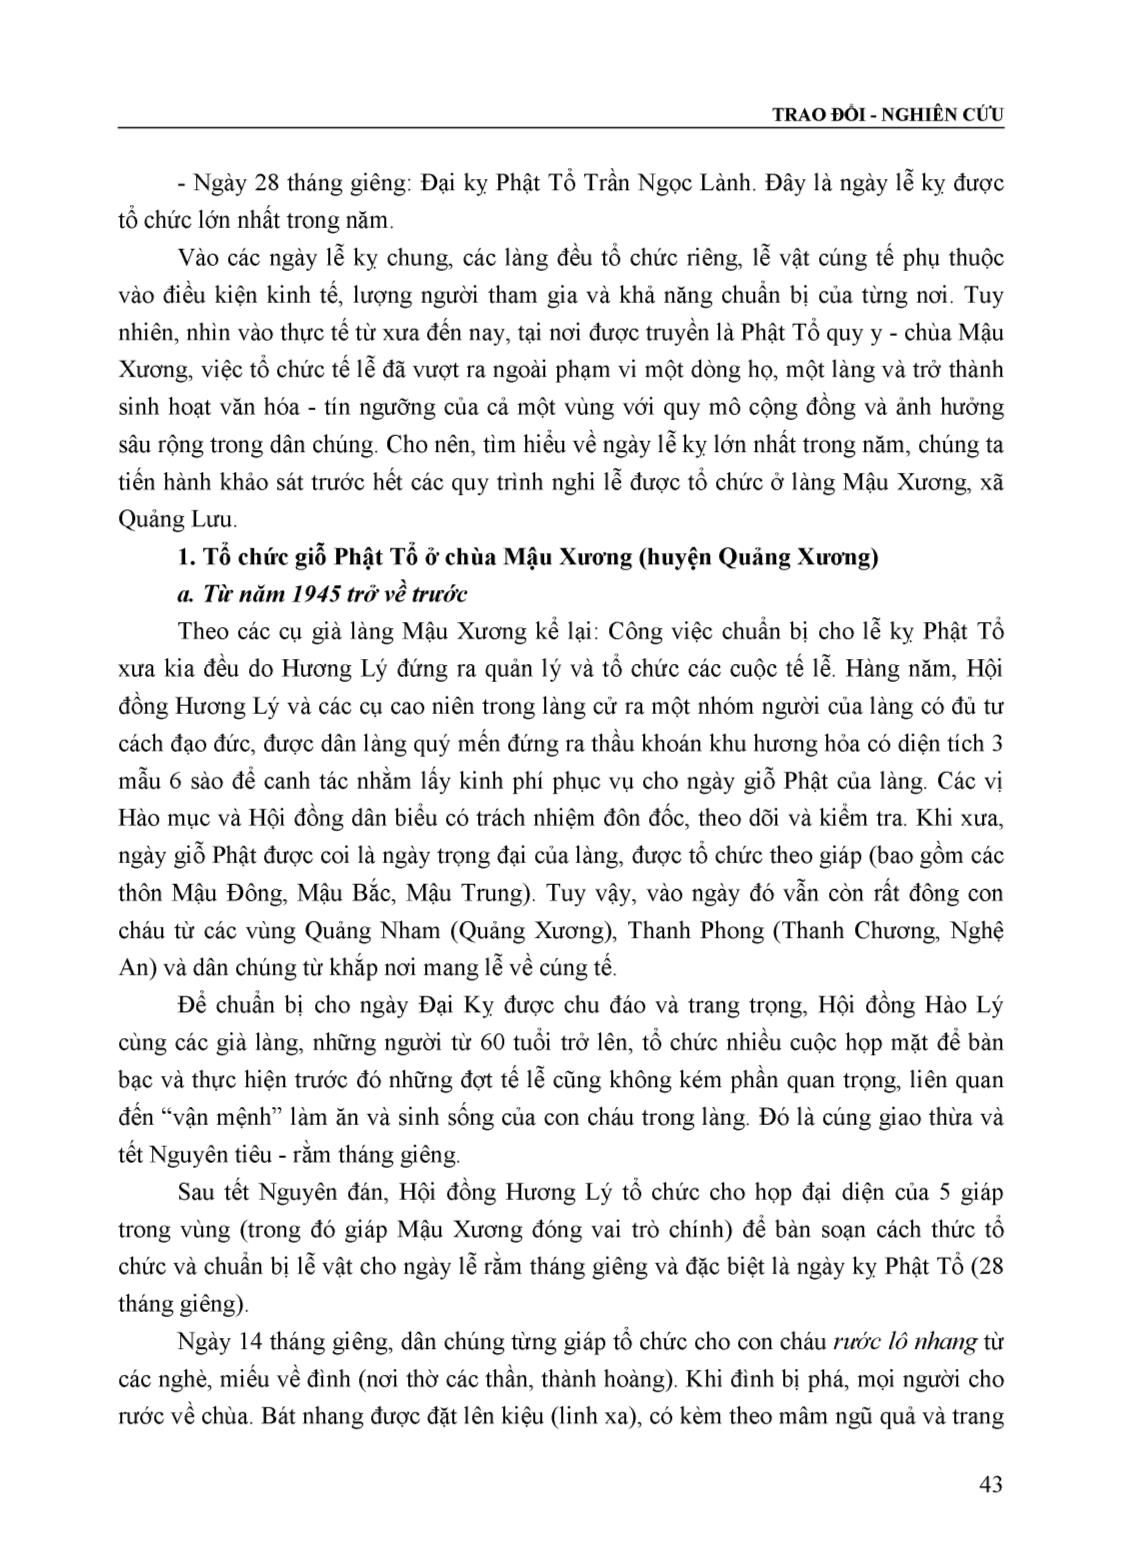 Hành lễ đại kỵ của dòng Nội Đạo Tràng ở Thanh Hóa trang 2